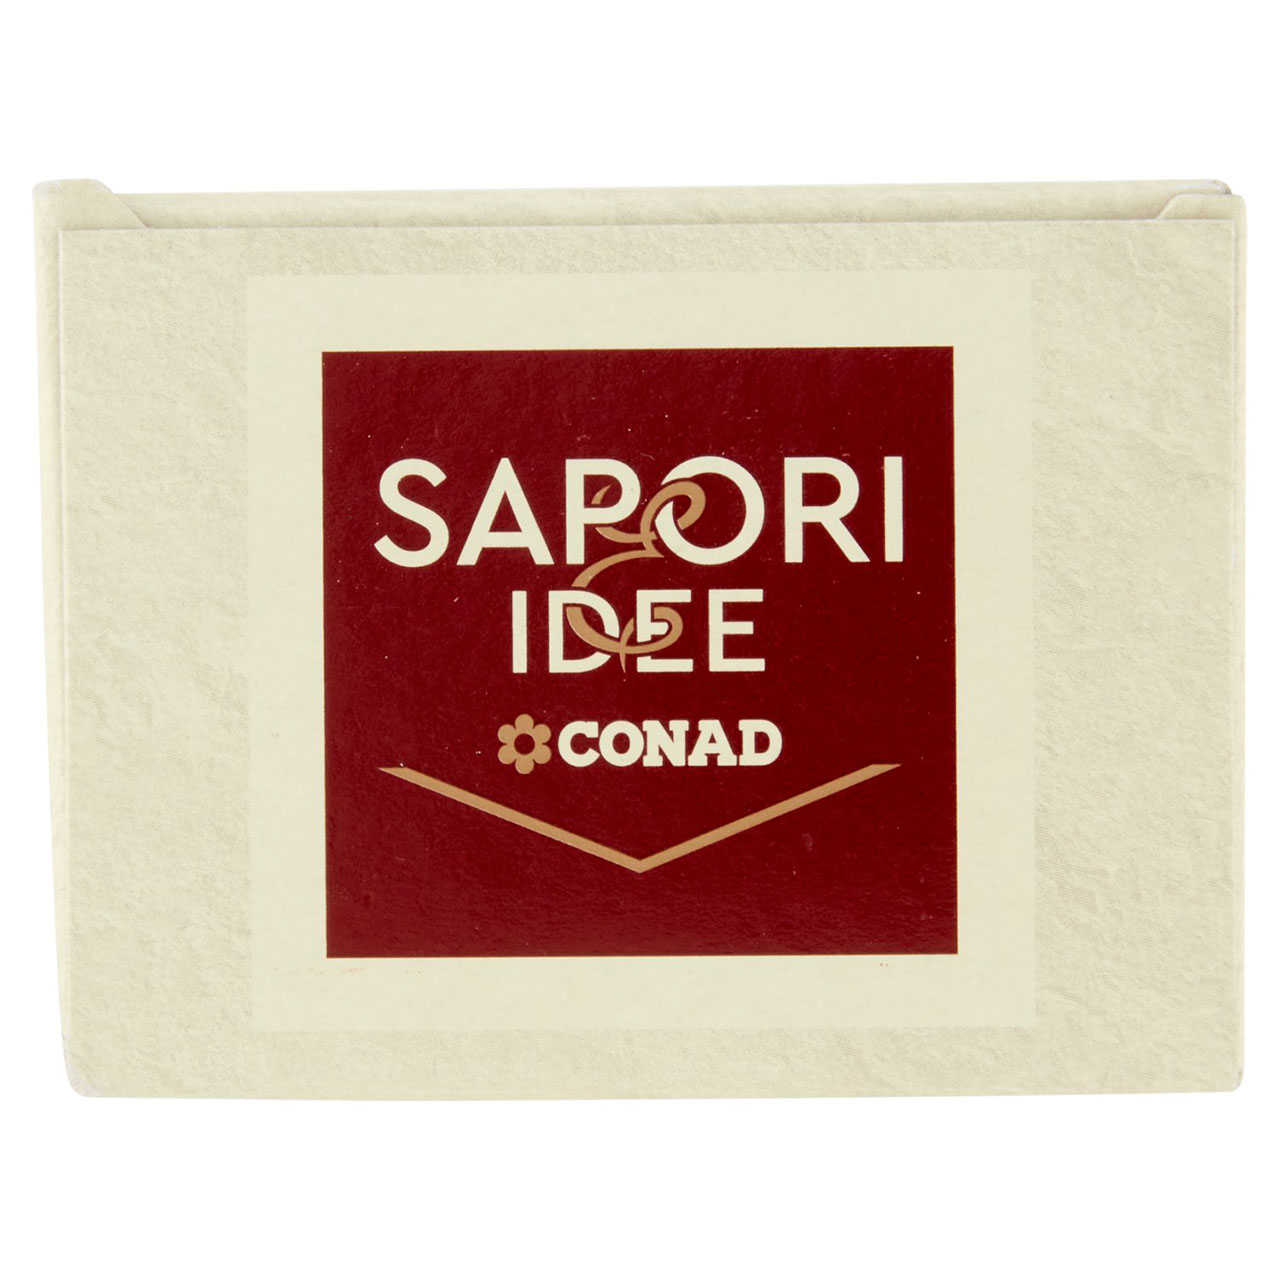 Sale Grosso Integrale 500 g Sapori & Idee Conad in vendita online